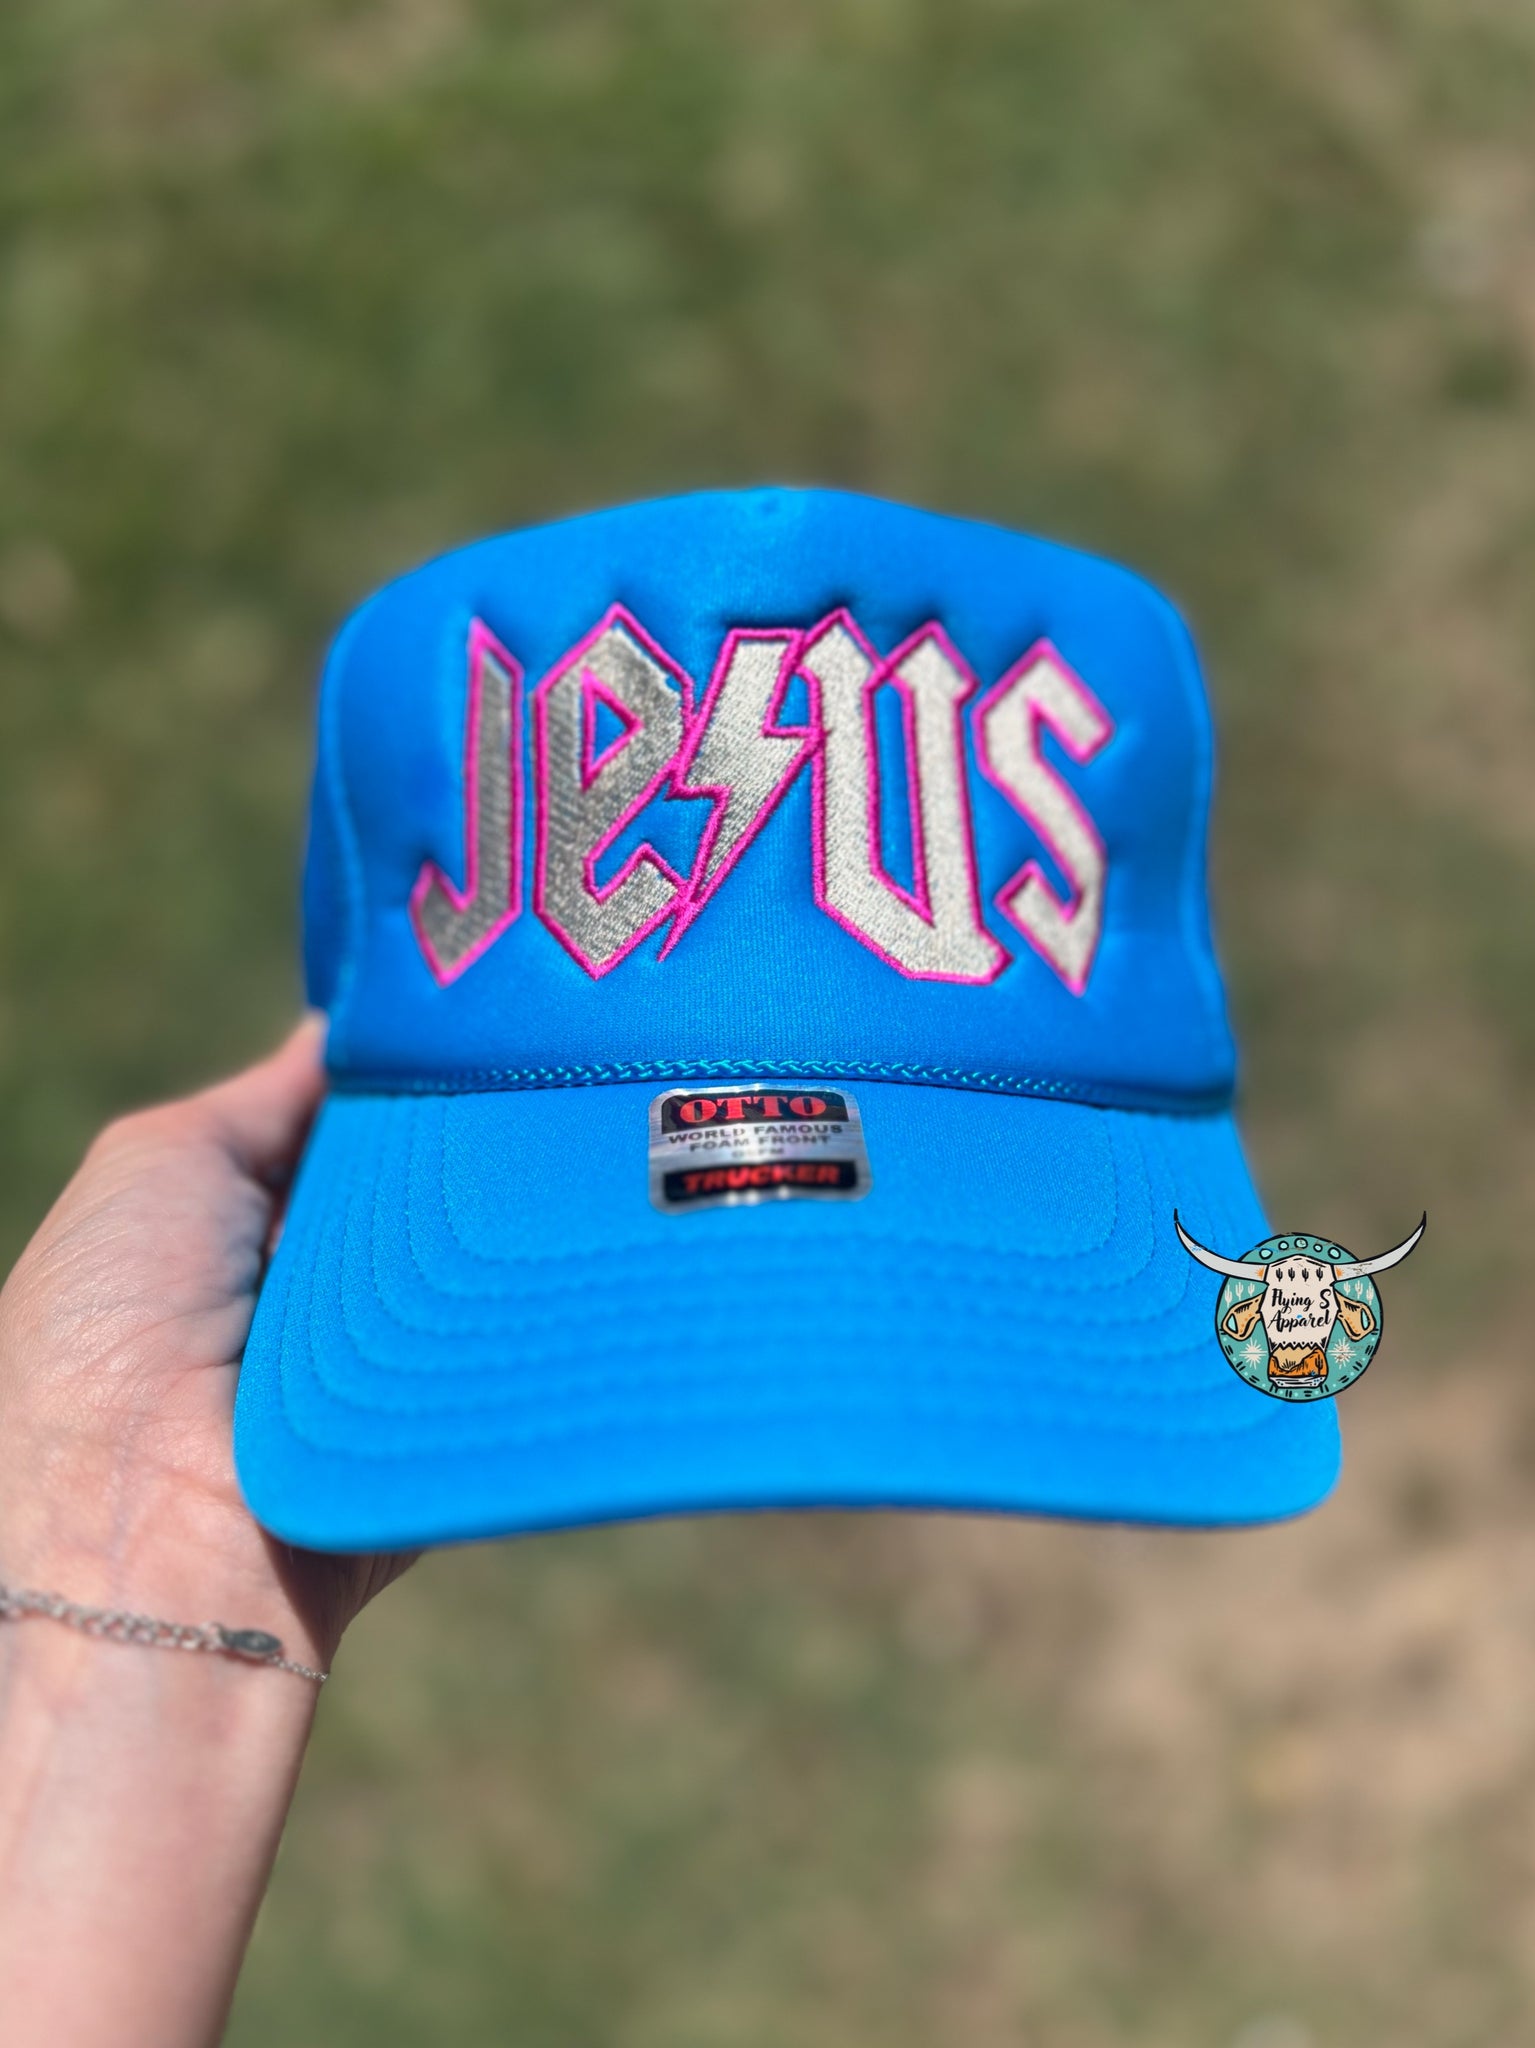 Jesus trucker cap